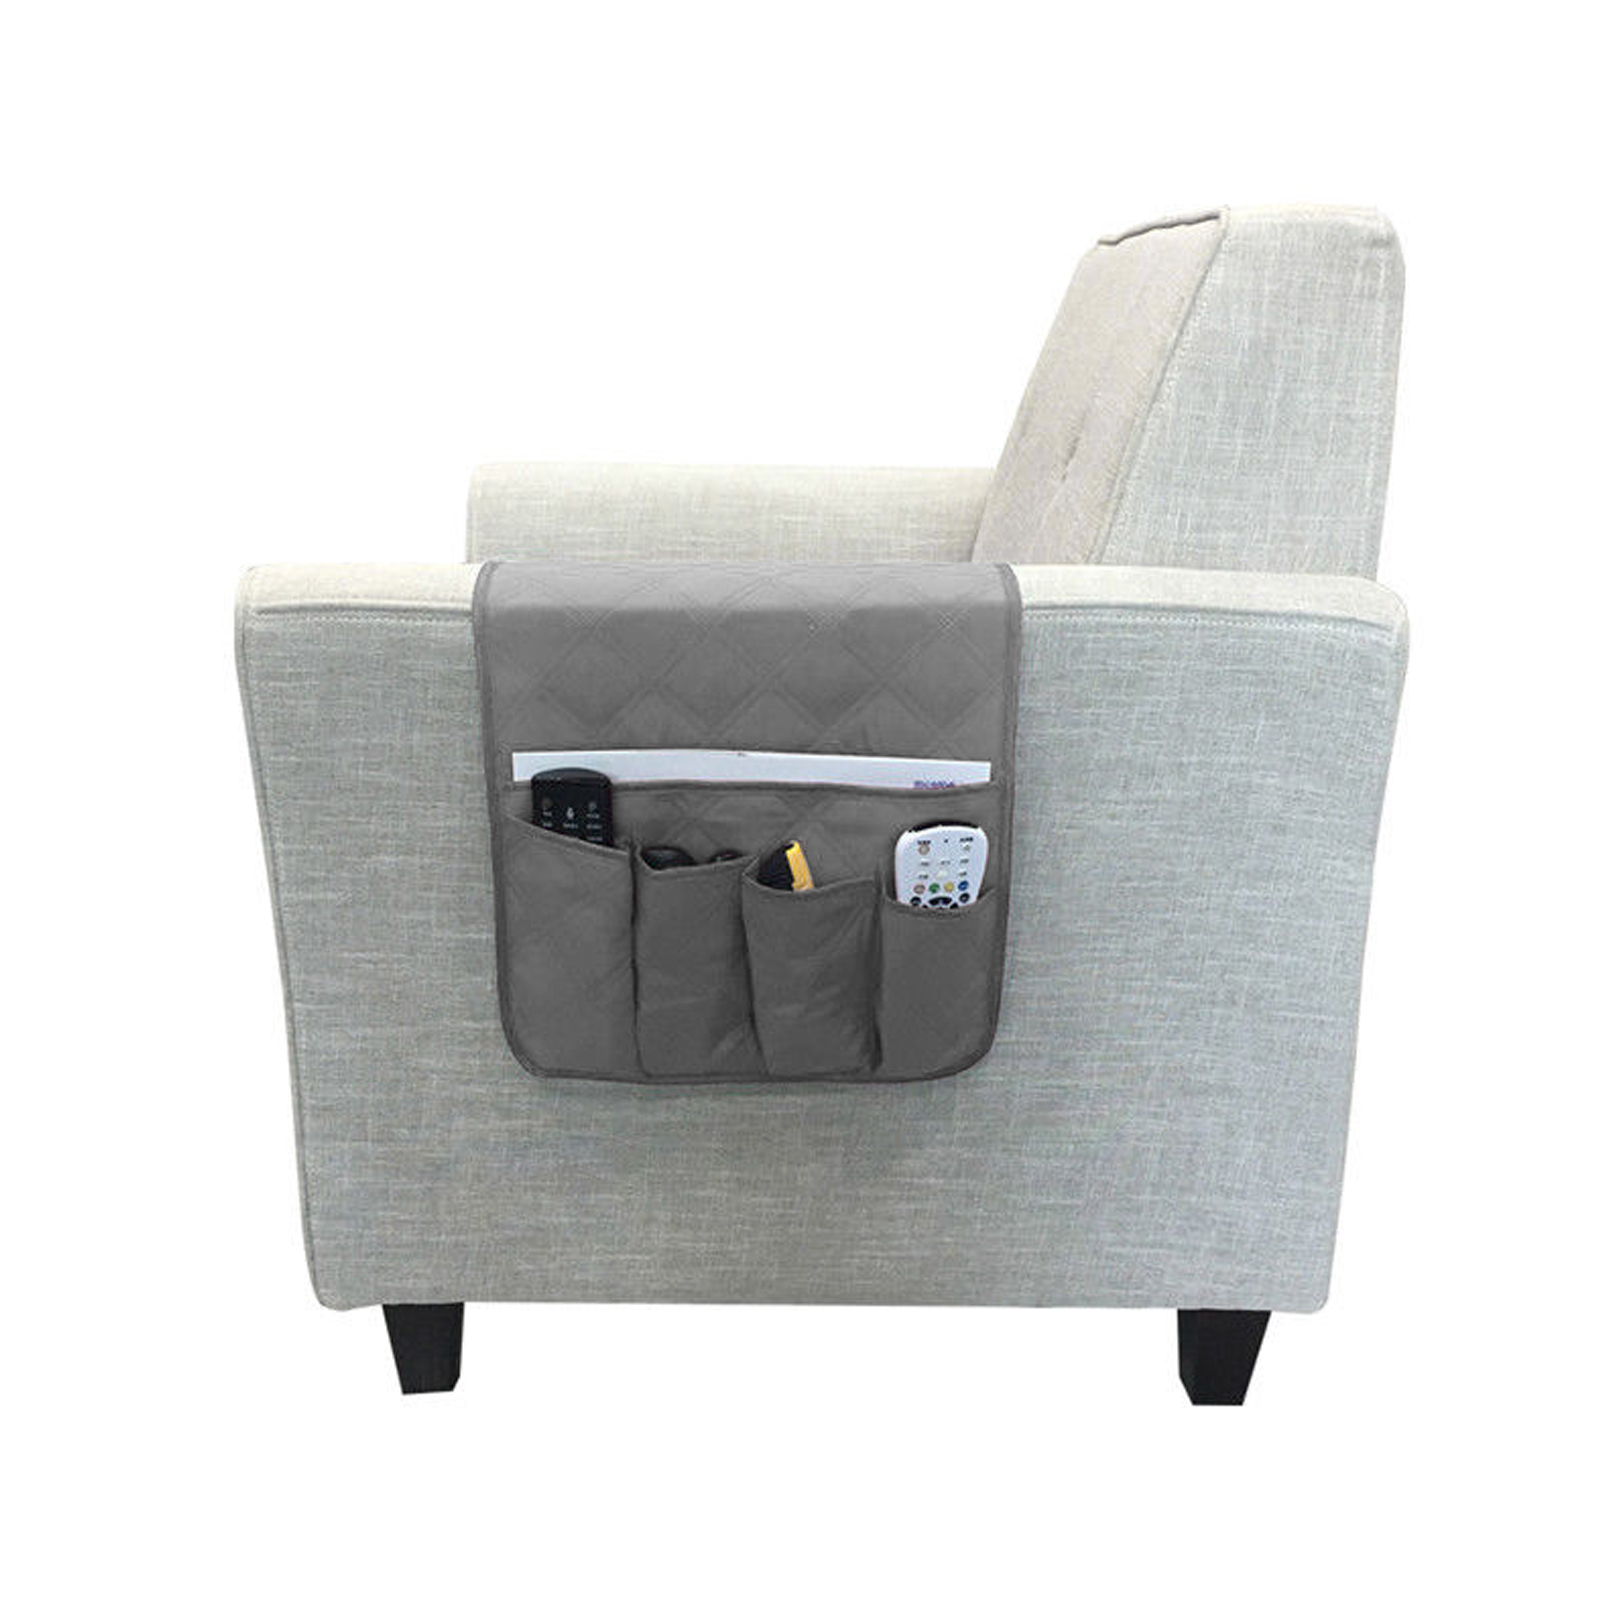 5 Pocket Sofa Arm Rest Organizer Caddy Couch Tray Remote Control Holder